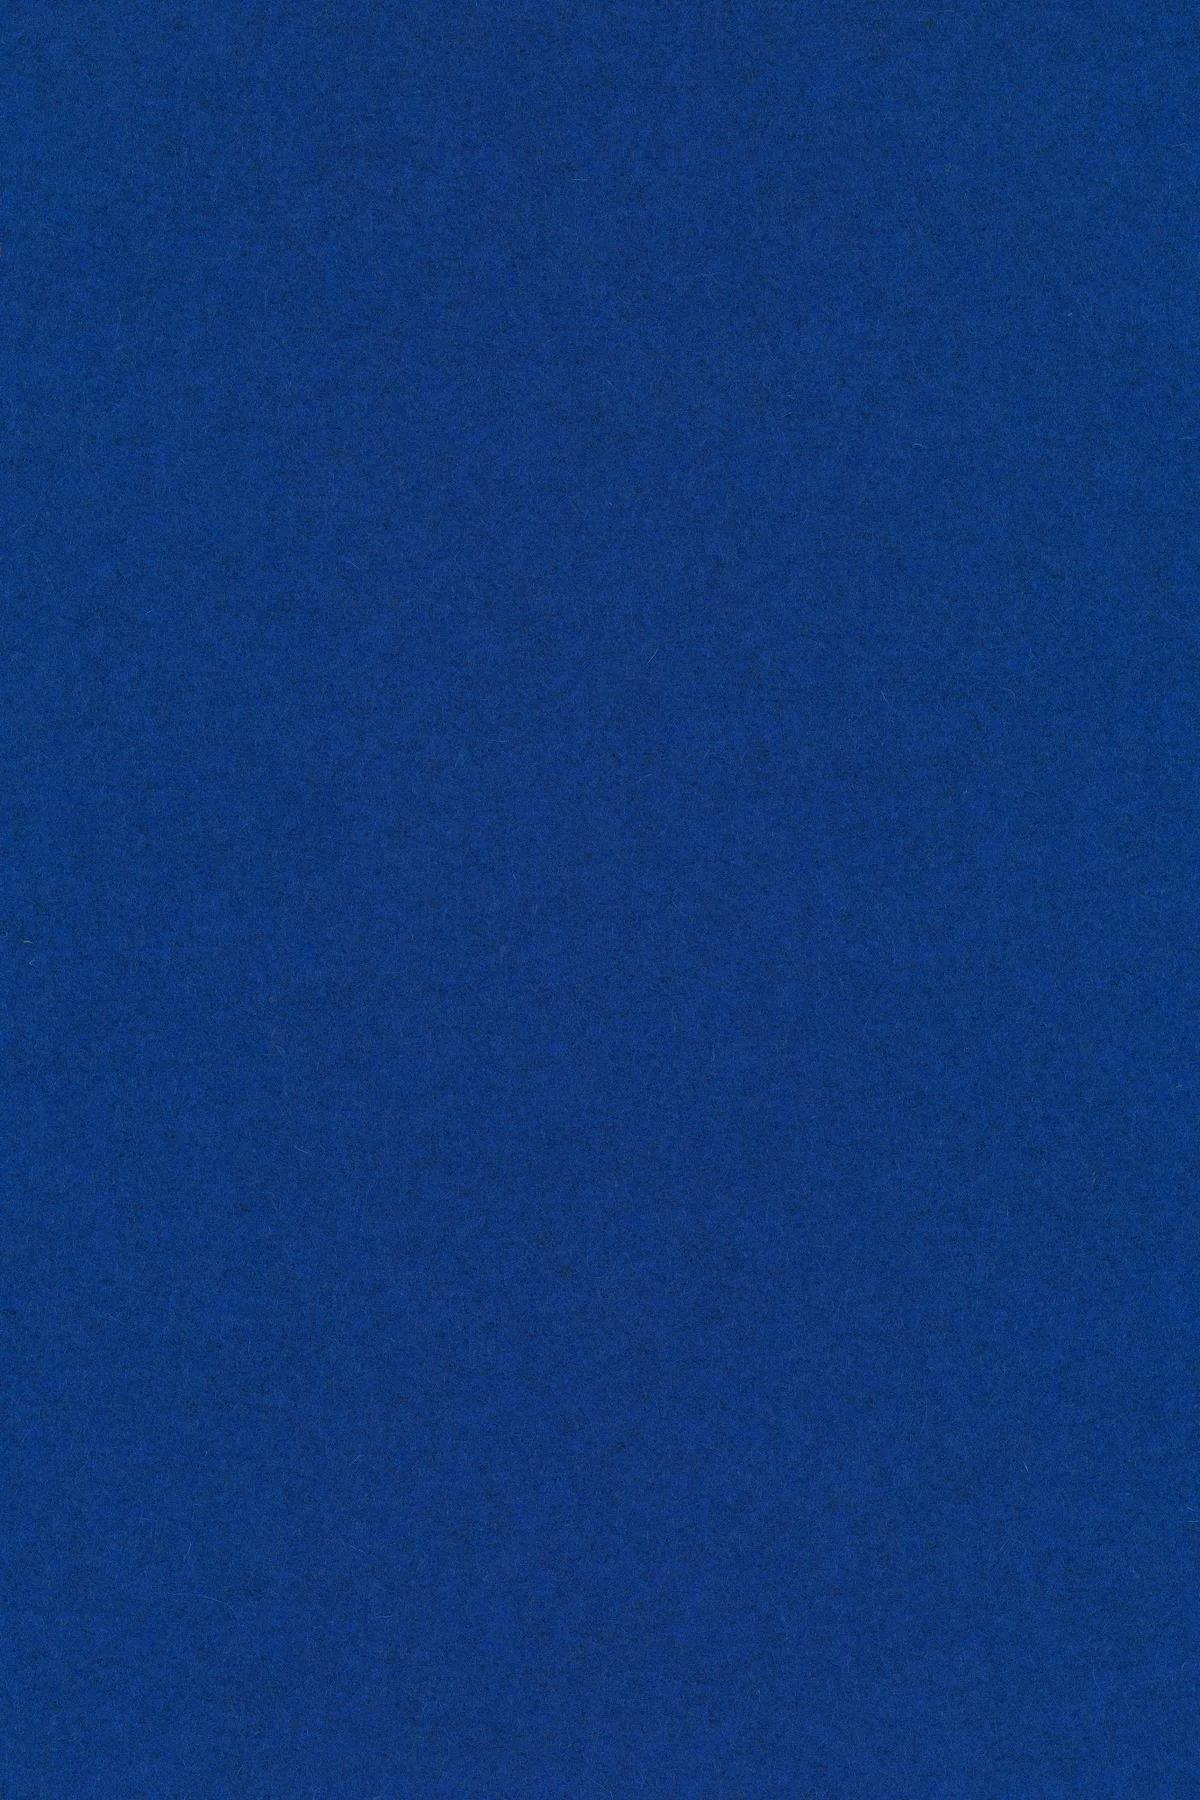 Fabric sample Divina Melange 3 757 blue